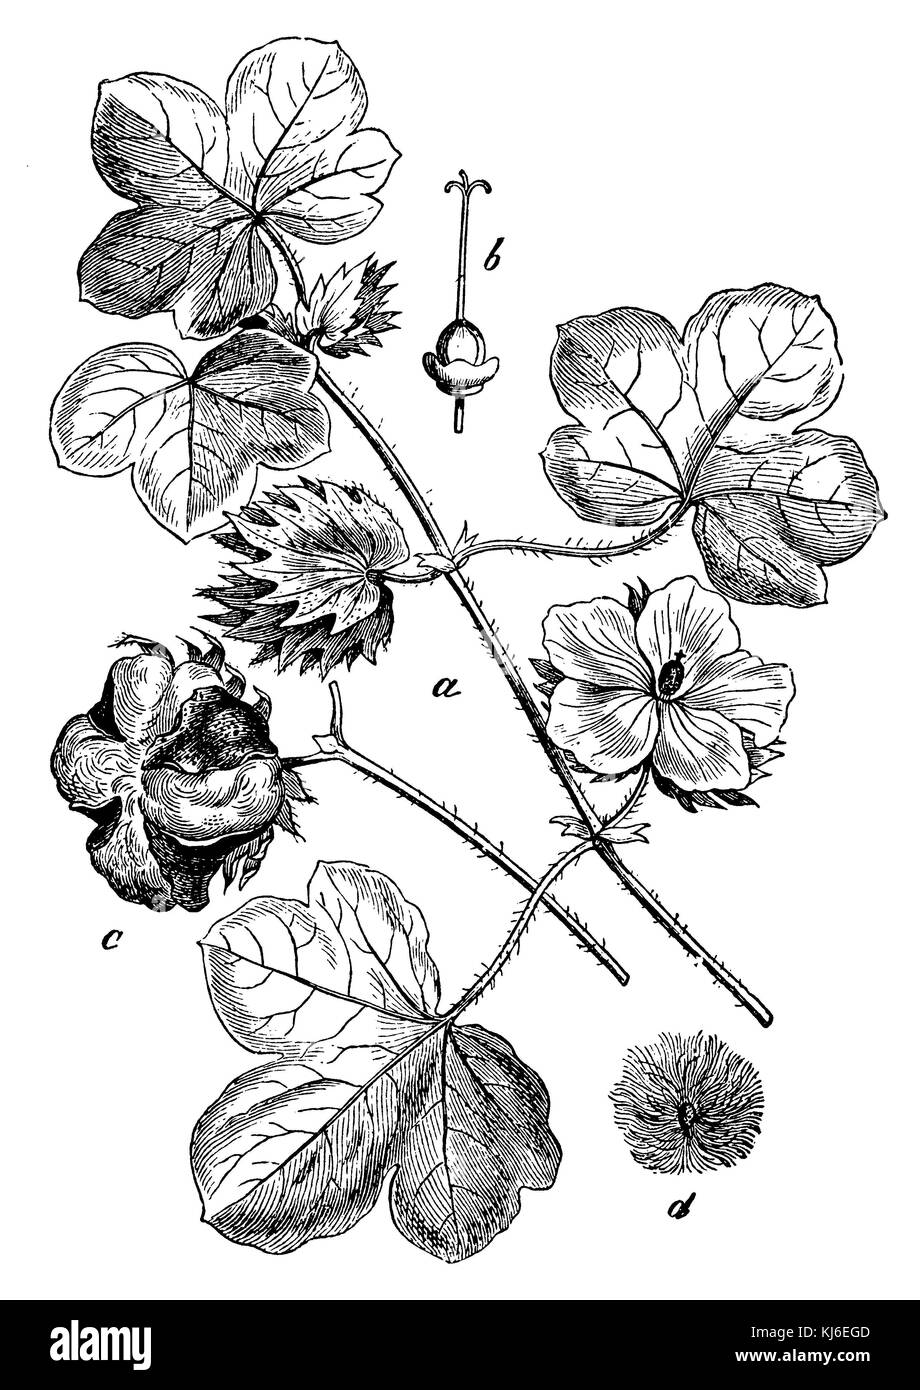 Baumwolle (Gossypium herbaceum Baumwolle < > ein blütenzweig, b Stempel mit dem fruchtknoten, c aufgesprungene kapselfrucht, d identisch mit Haaren) Stockfoto